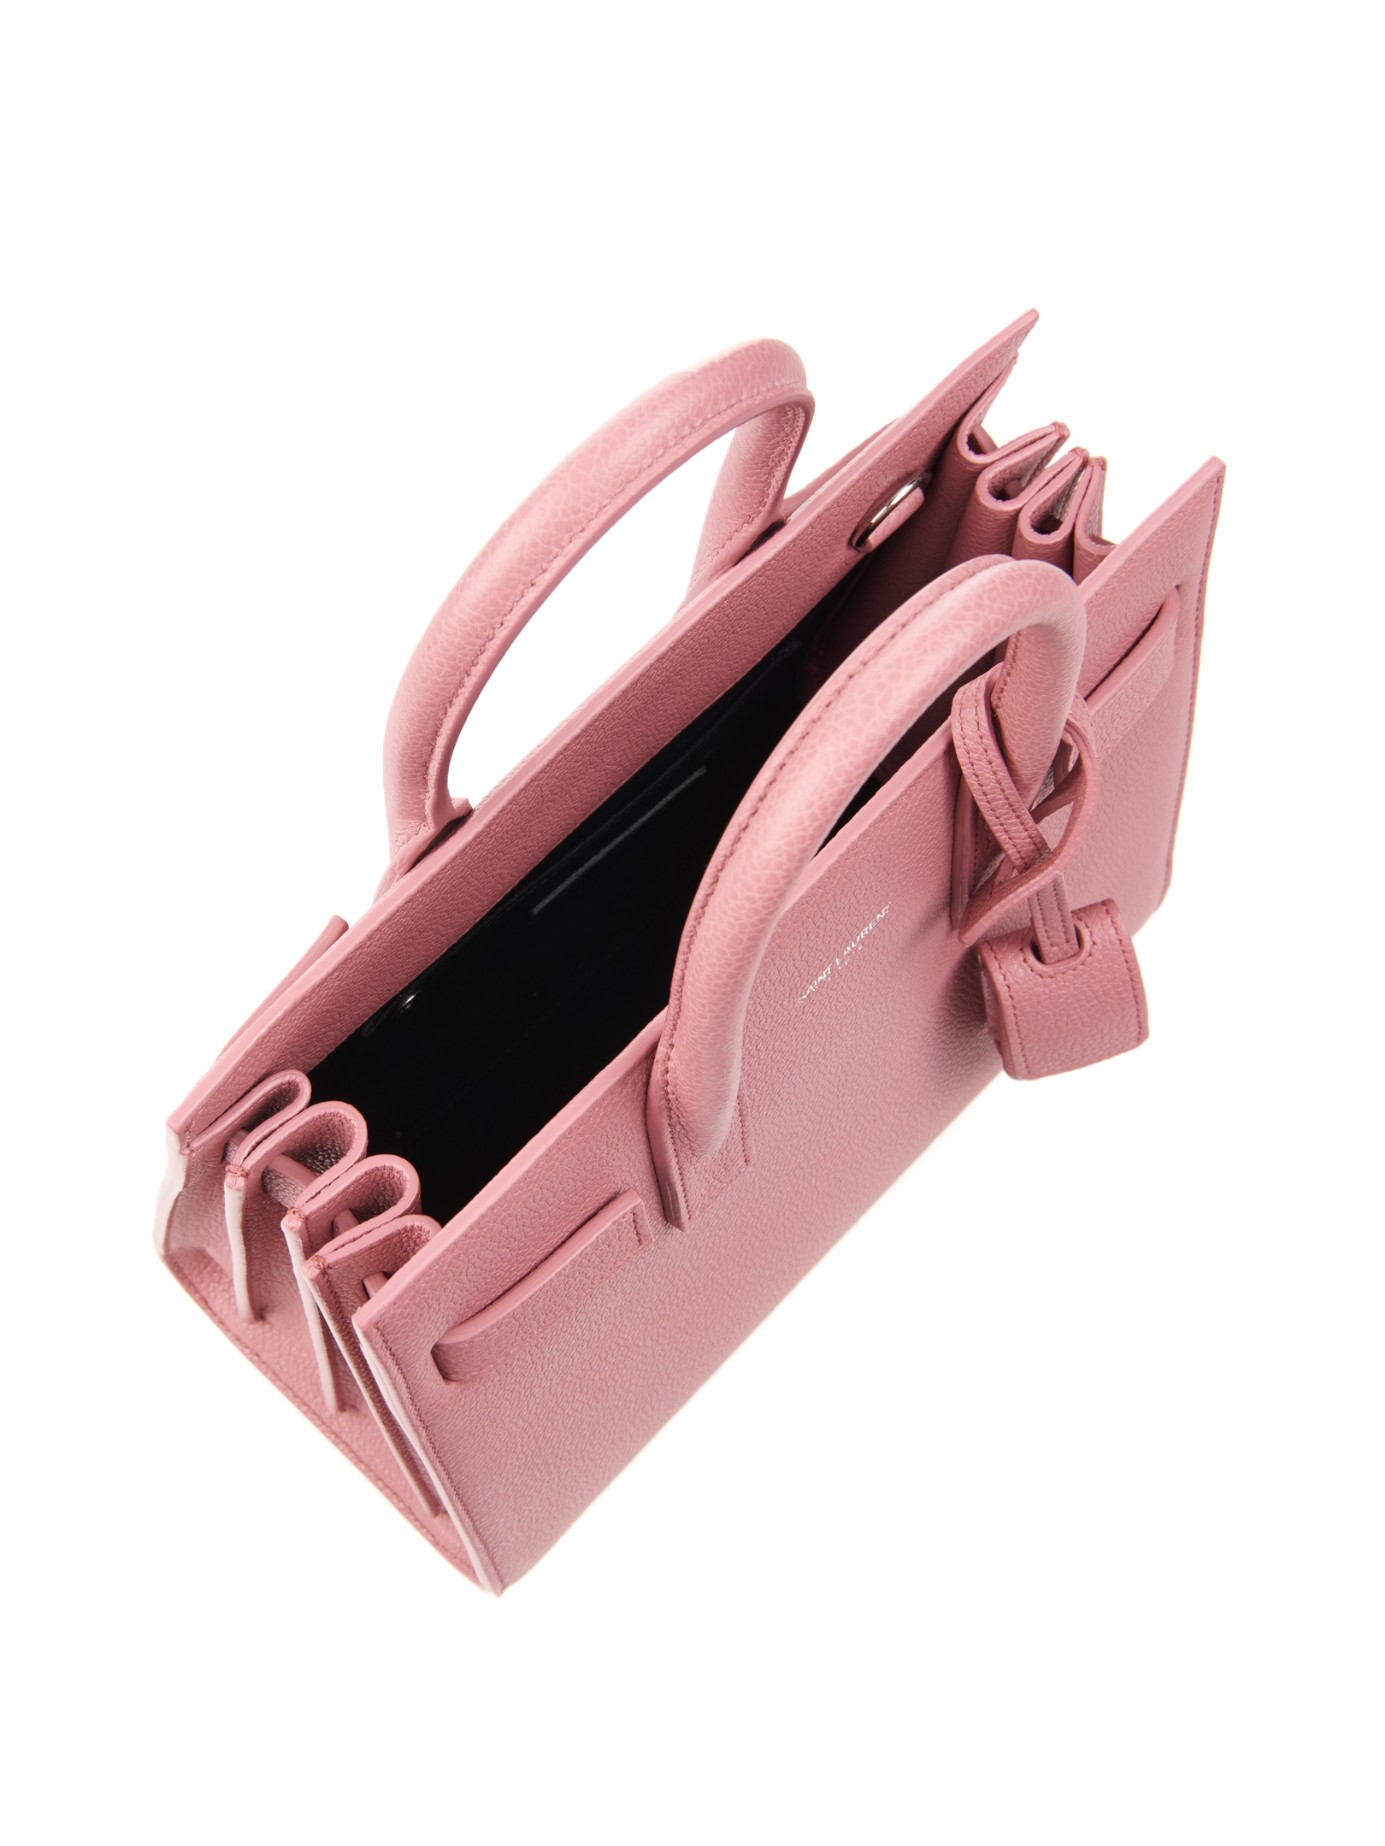 Saint Laurent Sac De Jour Nano Tote Bag in Pink